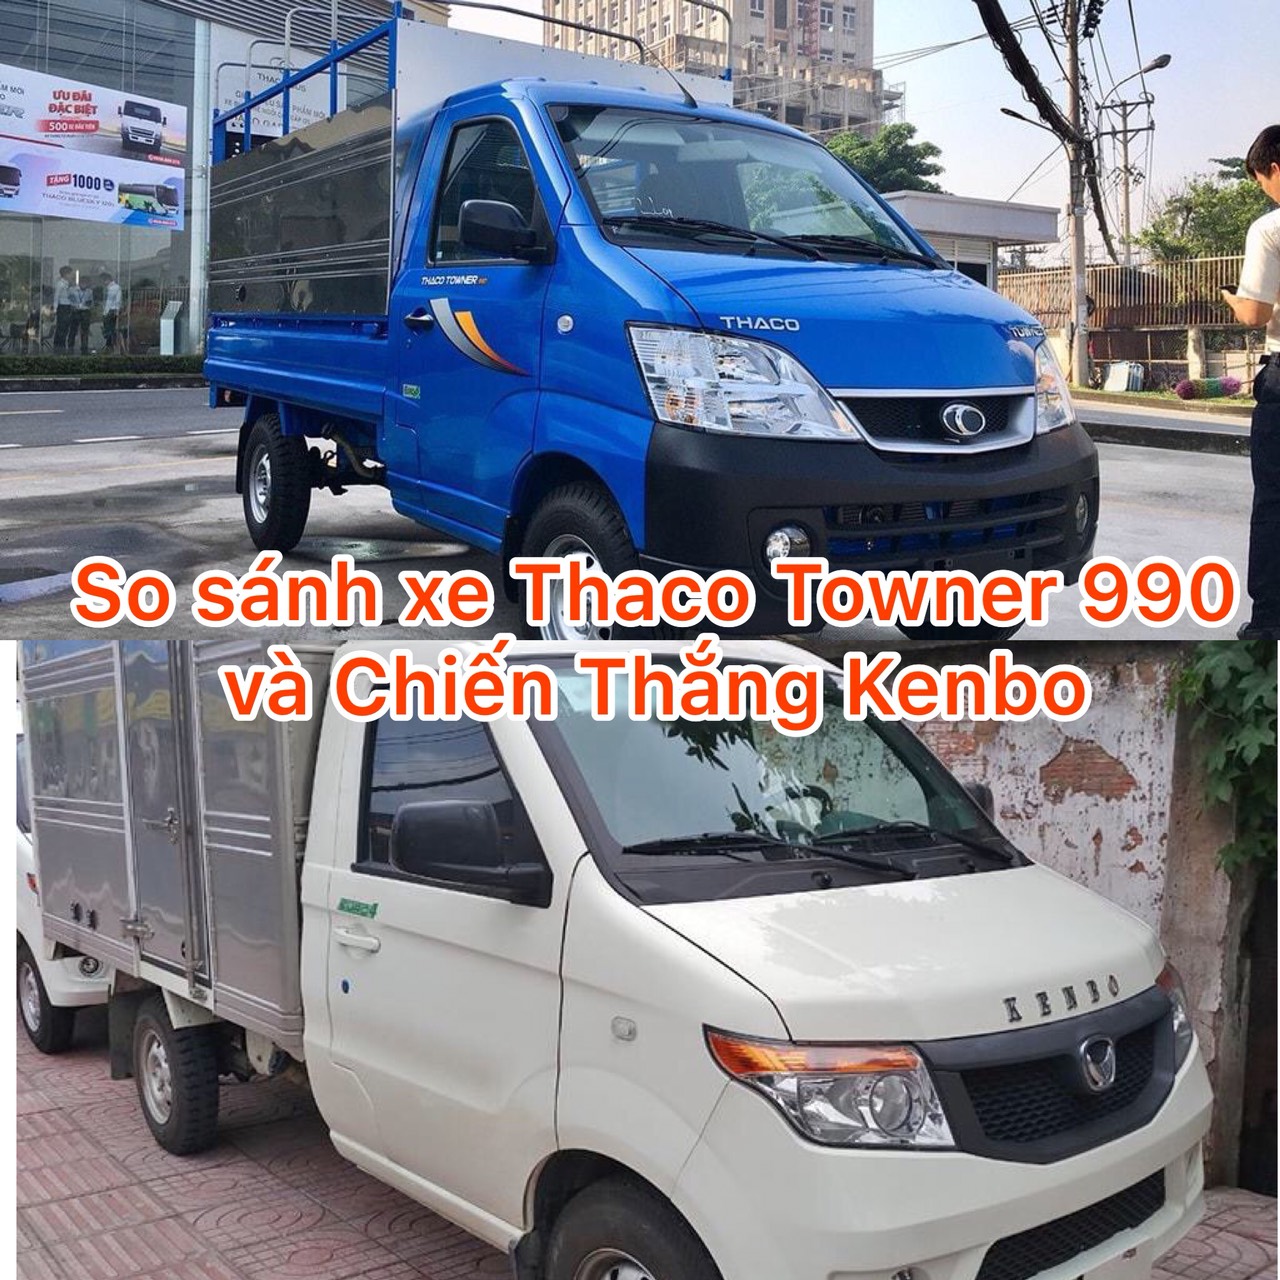 So sánh xe tải Thaco Towner 990  và xe tải Chiến Thắng Ken Bo